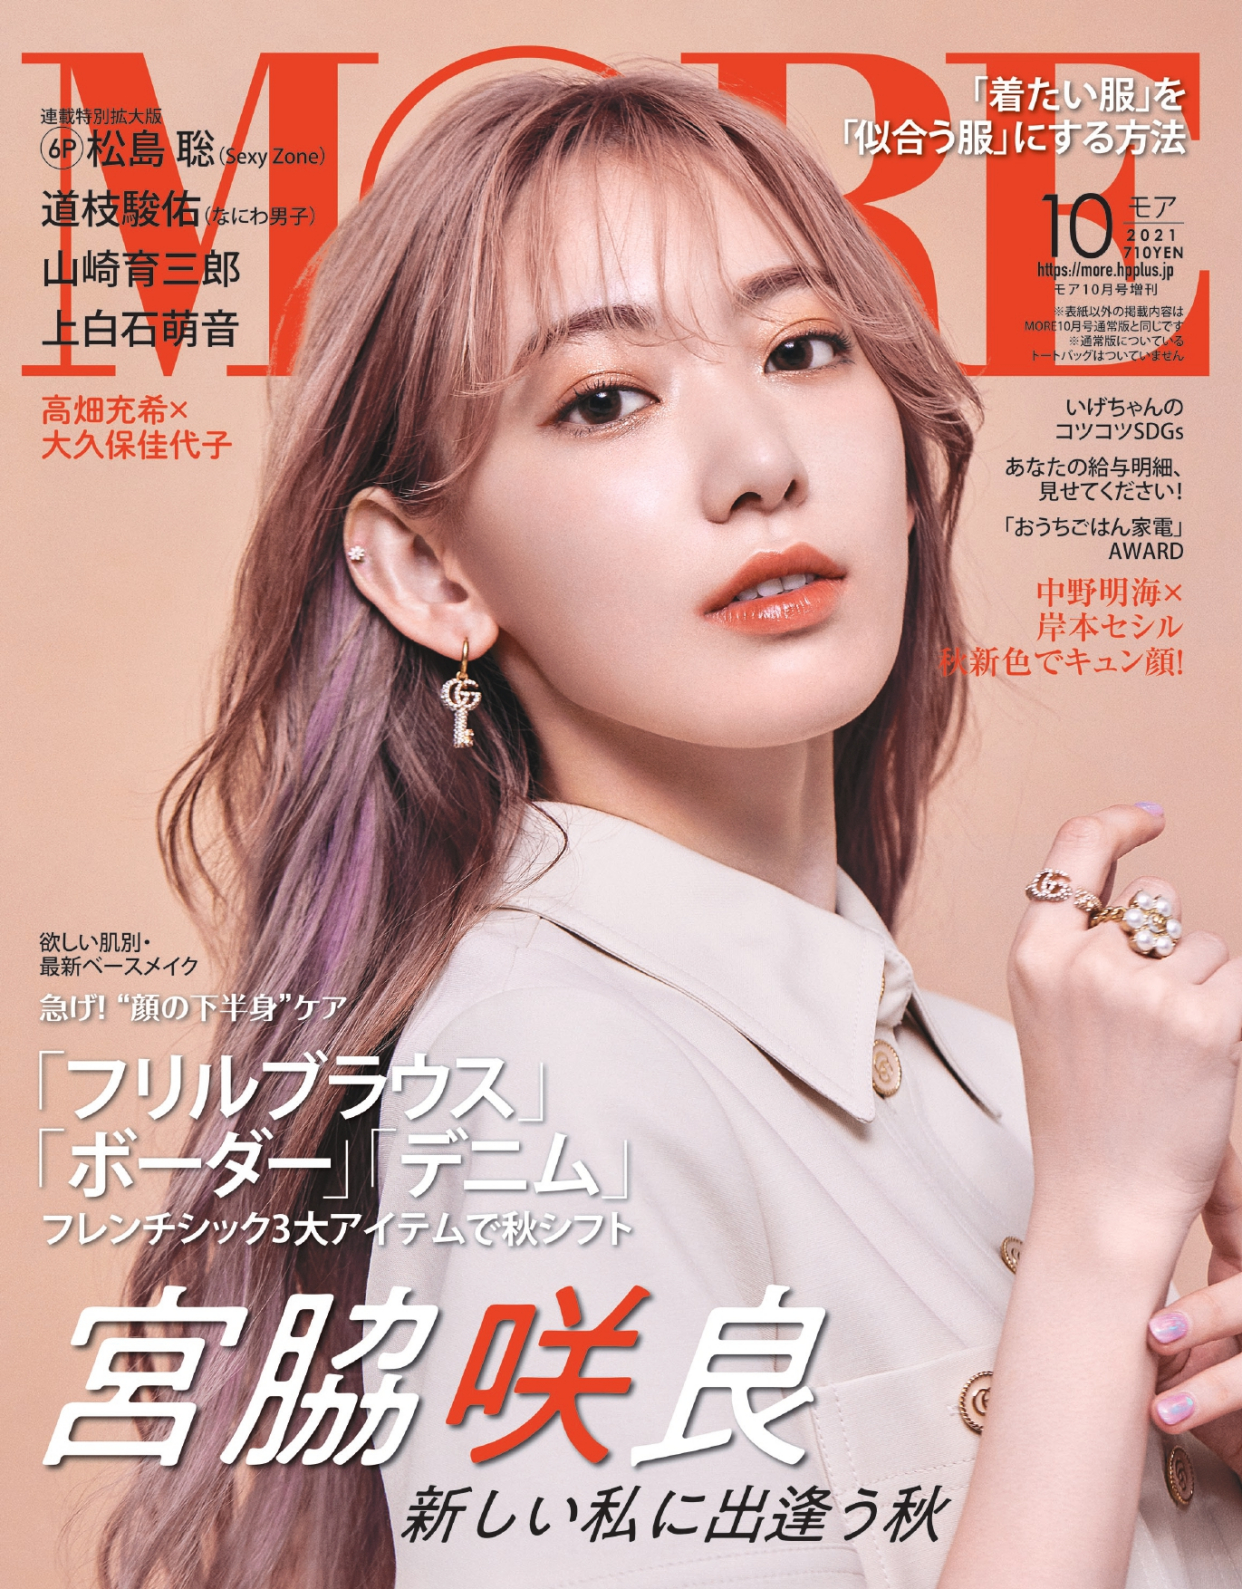 宫胁咲良,首次登上时尚杂志《more》封面,新粉色发型成为话题